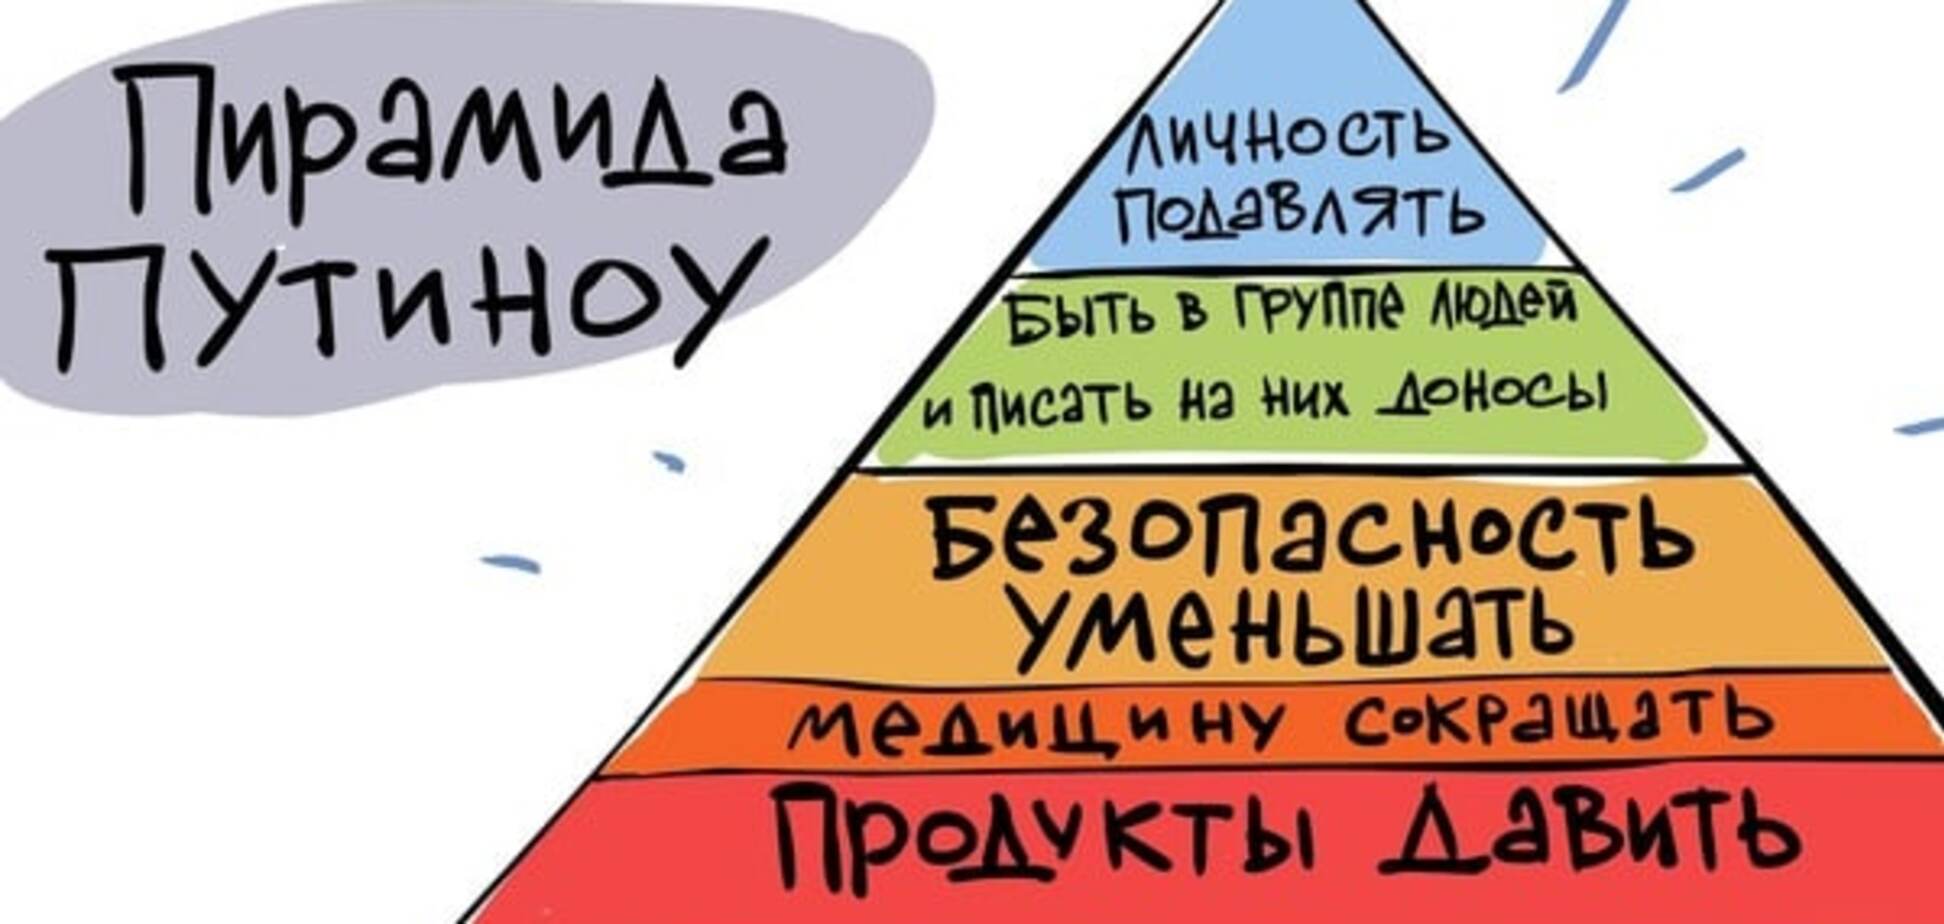 Пирамида Путиноу